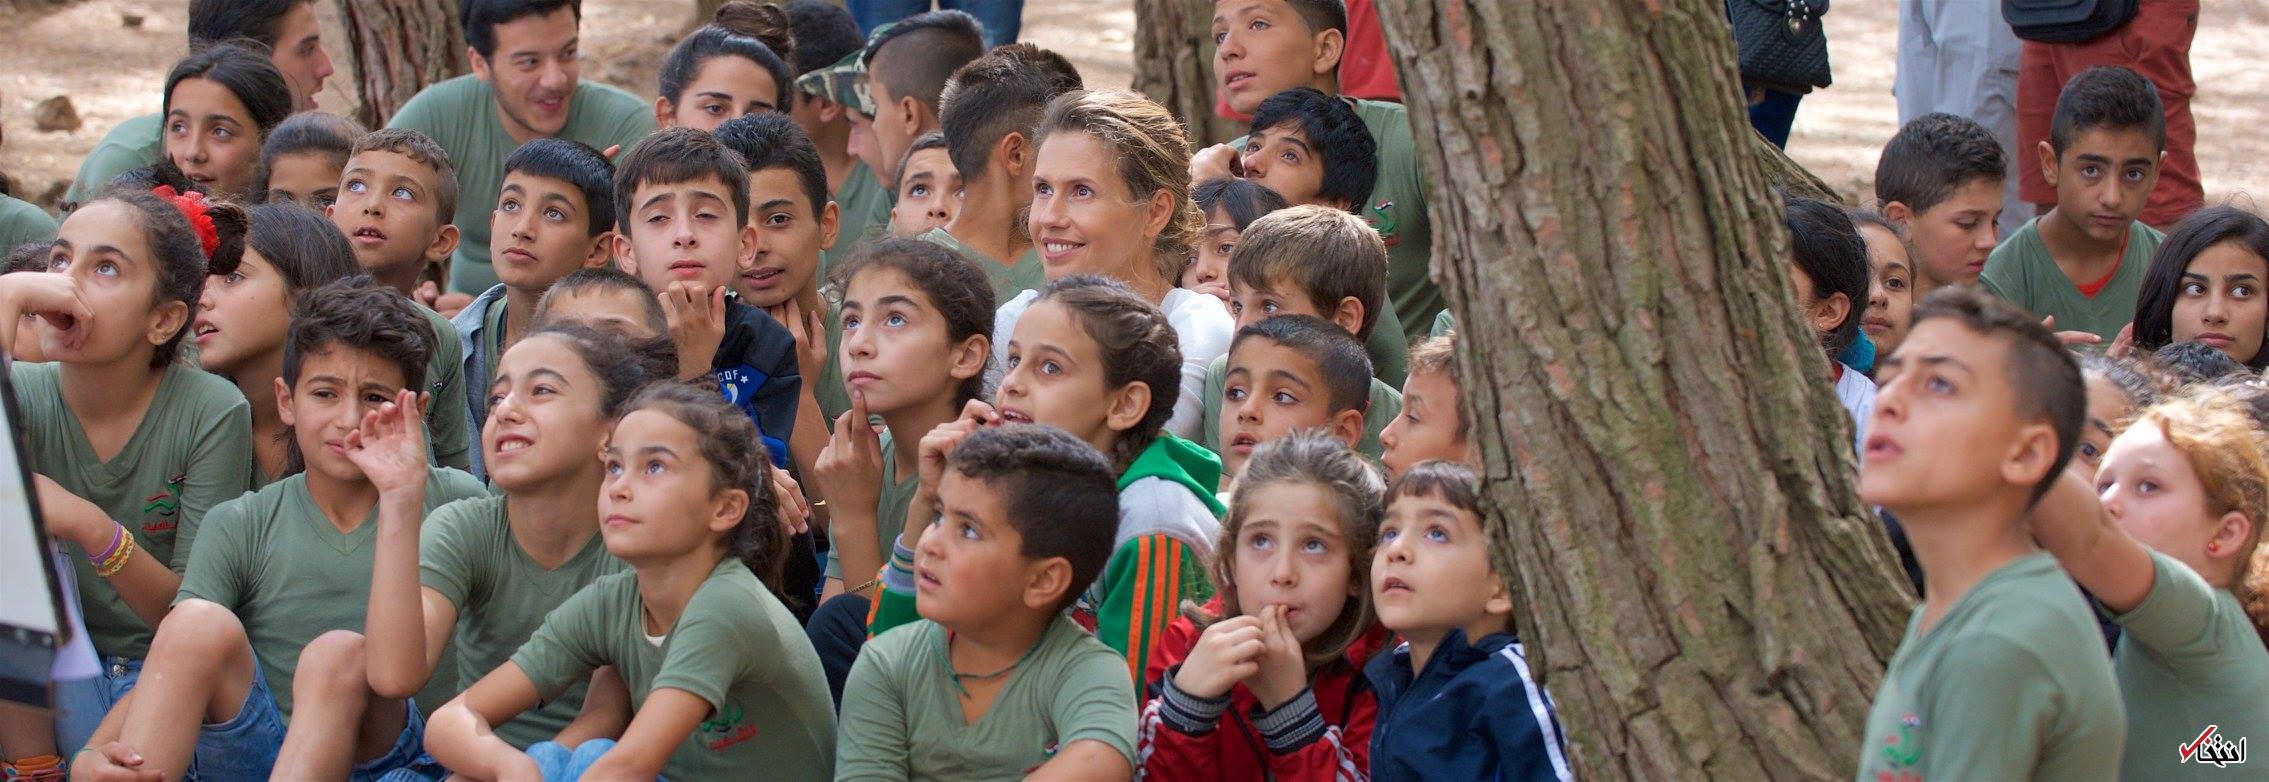 تصاویر : بانوی اول سوریه در اردوگاه فرزندان شهدا